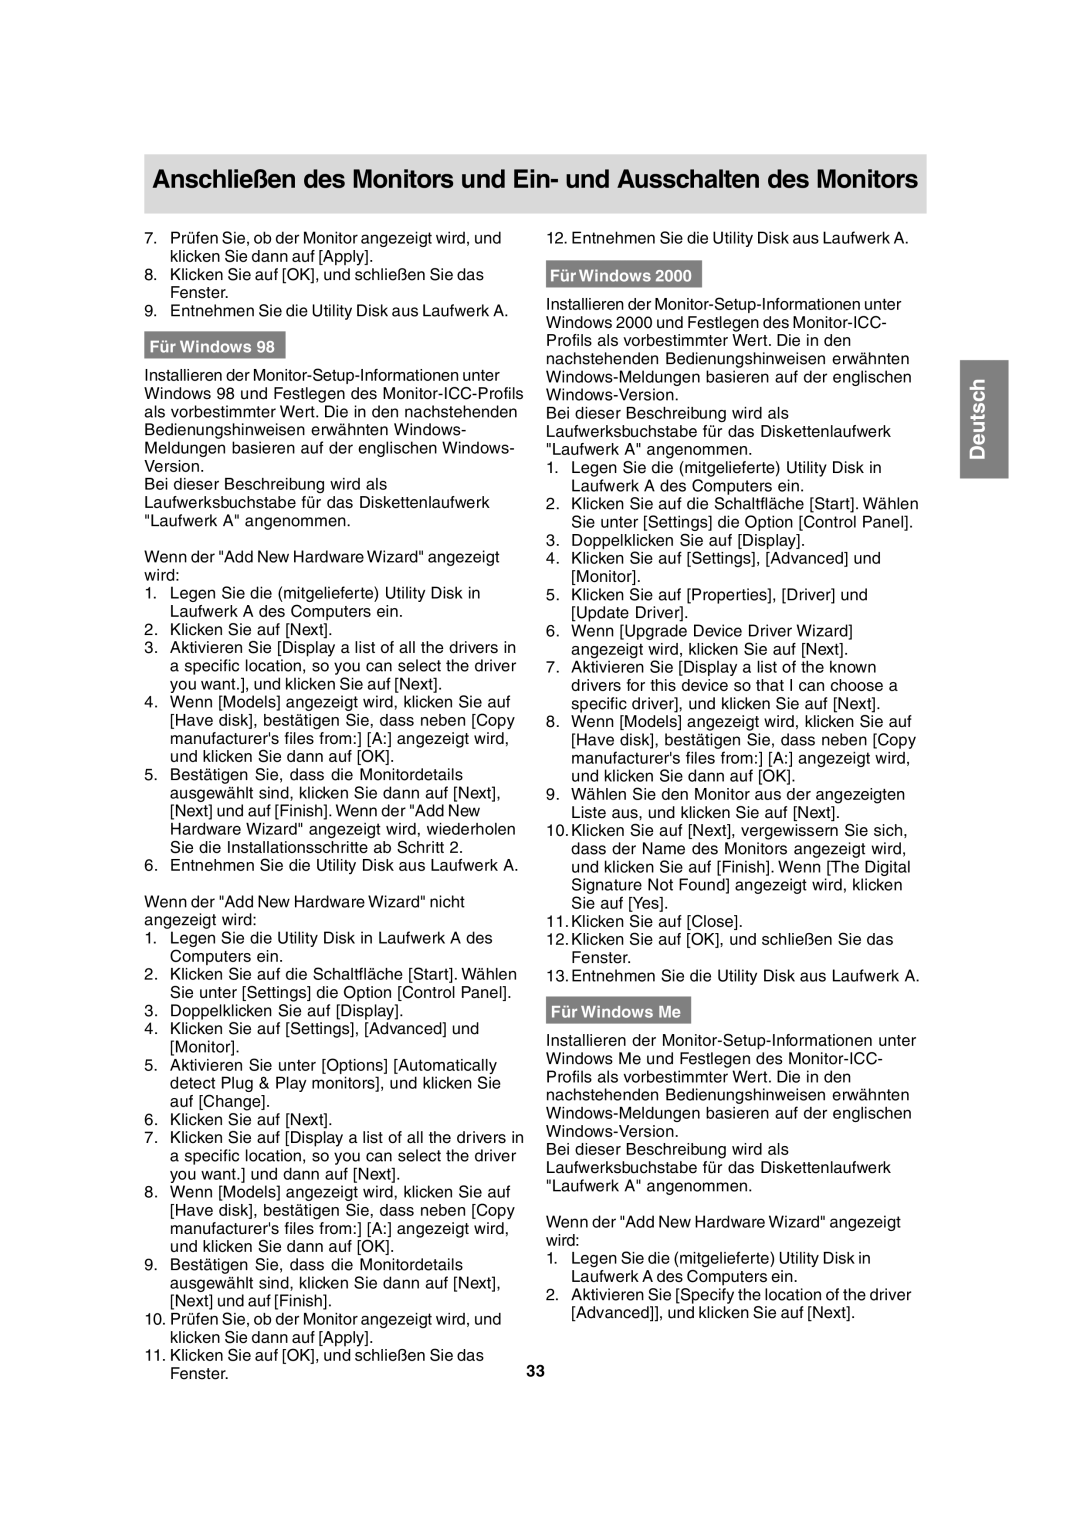 Sharp LL-T15A4 operation manual Für Windows Me, Anschließen des Monitors und Ein- und Ausschalten des Monitors, Deutsch 